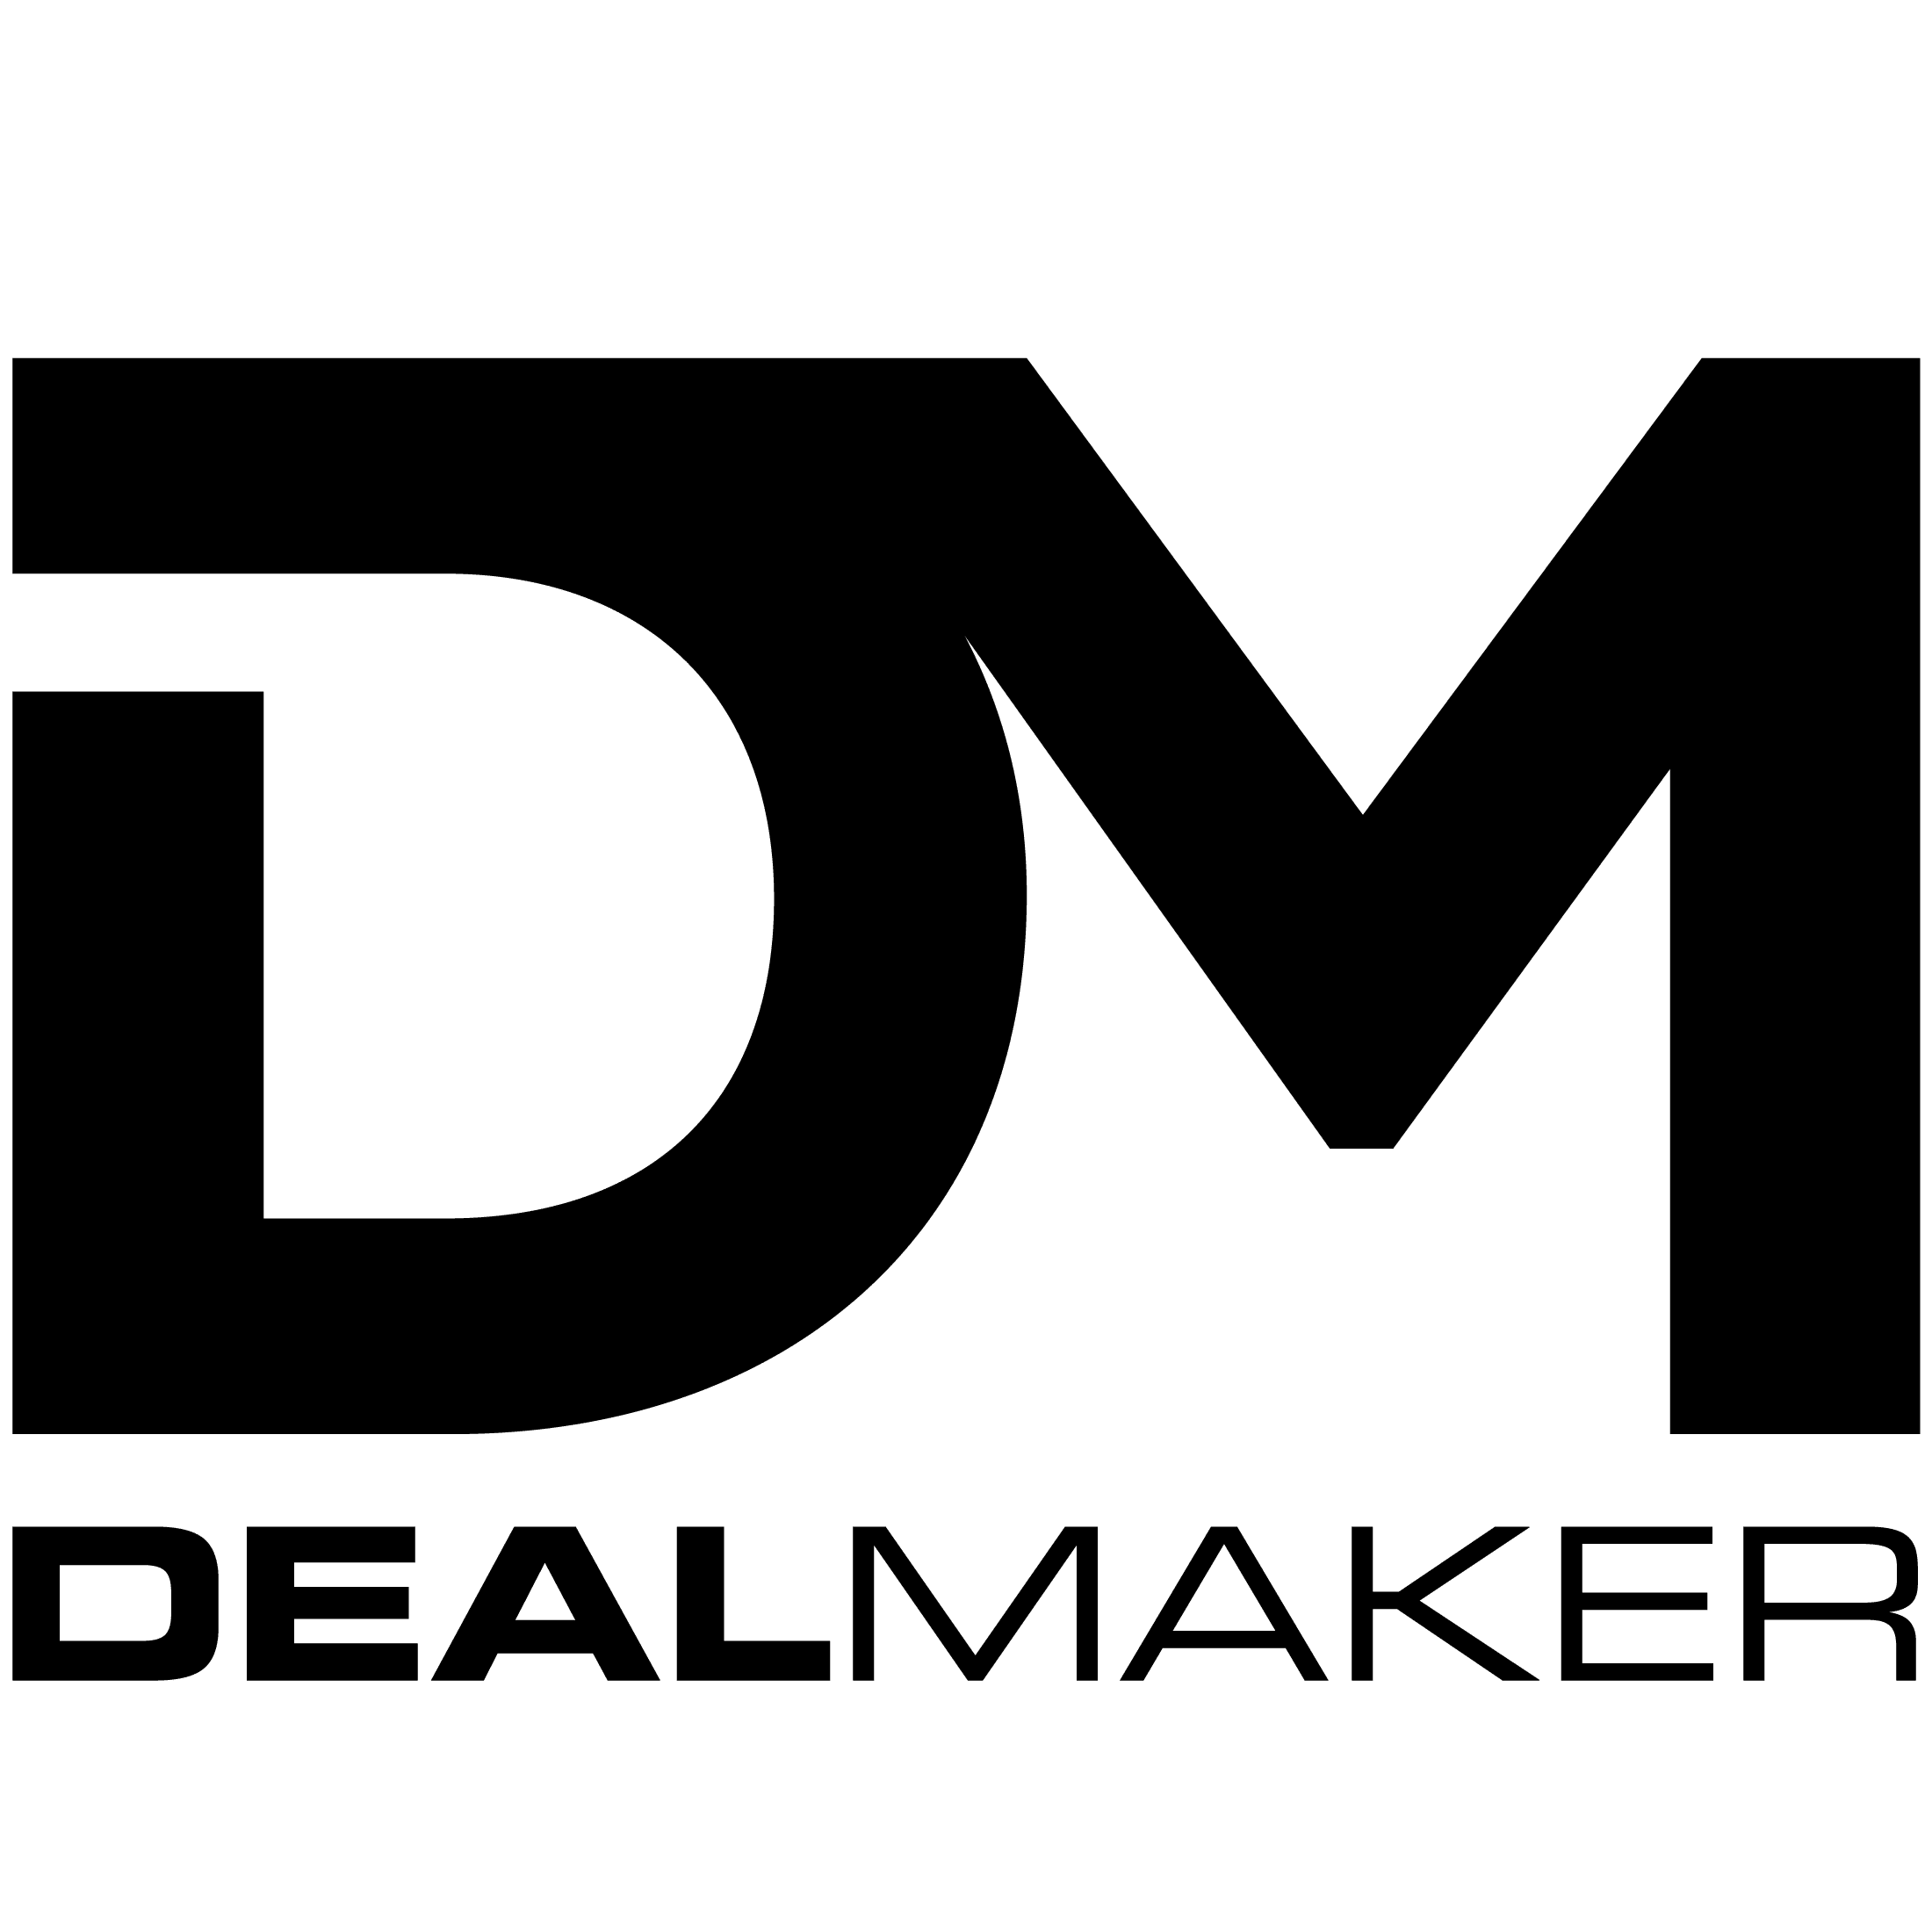 Deal Maker Live